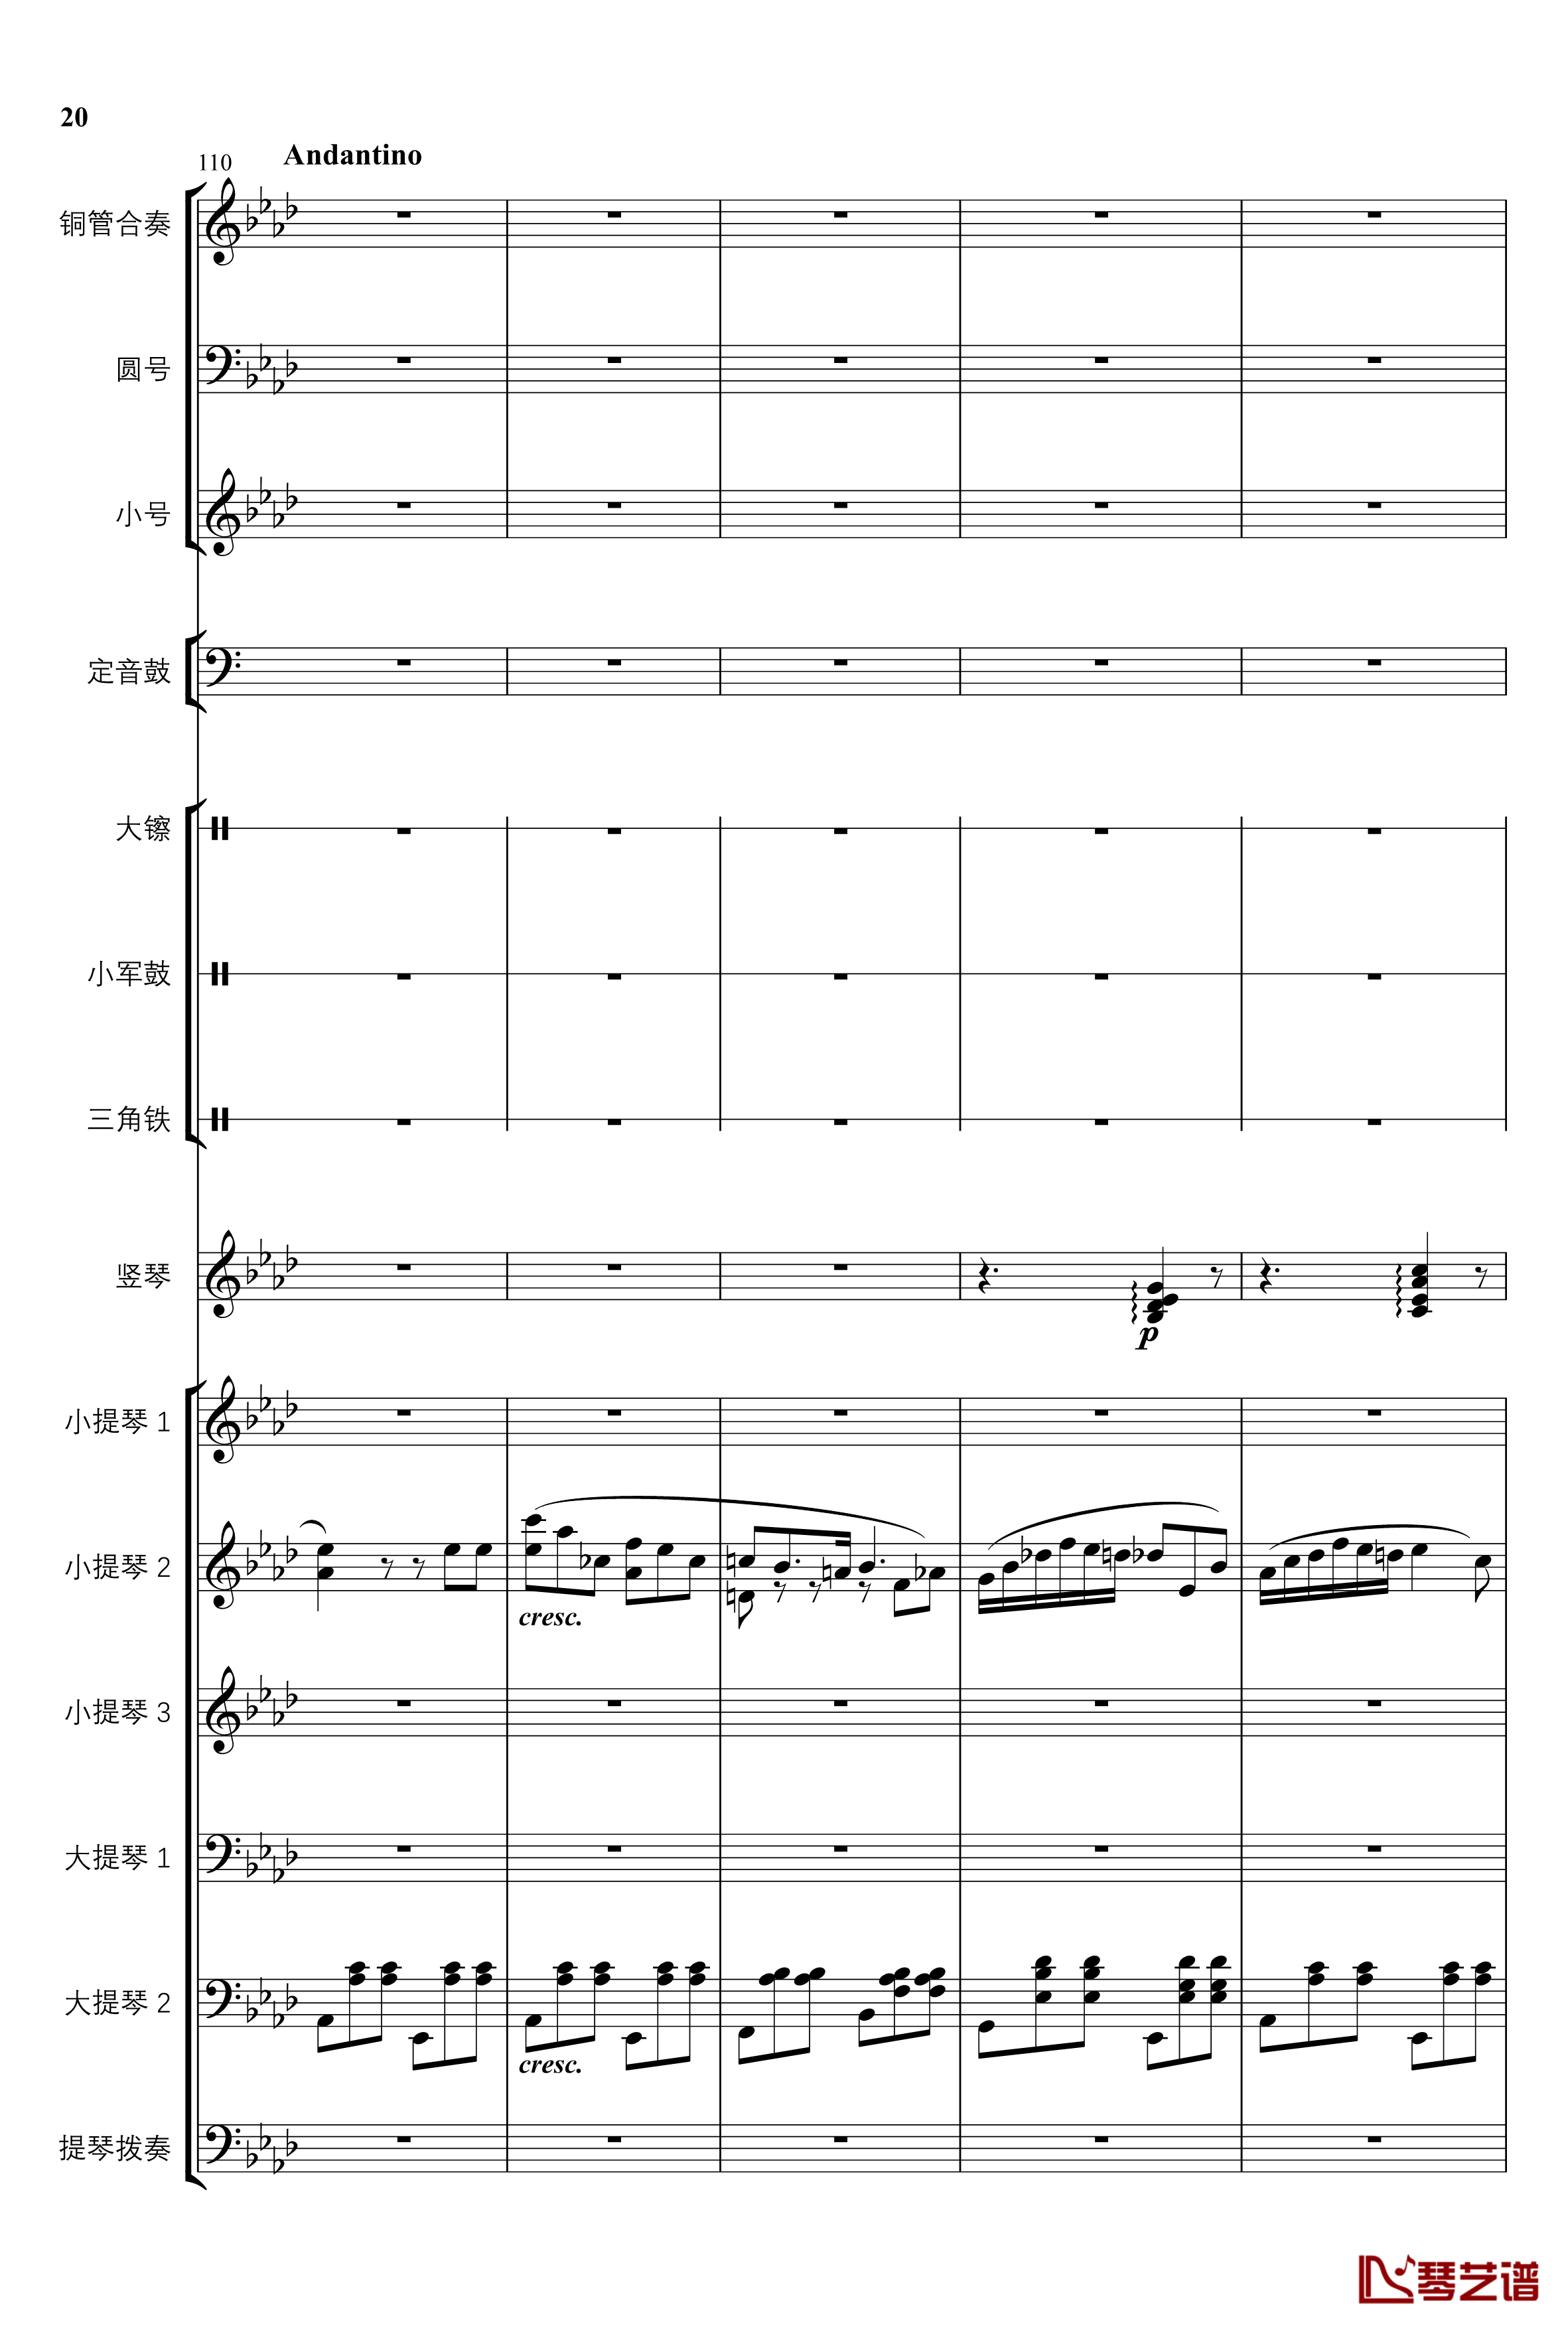 2013考试周的叙事曲钢琴谱-管弦乐重编曲版-江畔新绿20